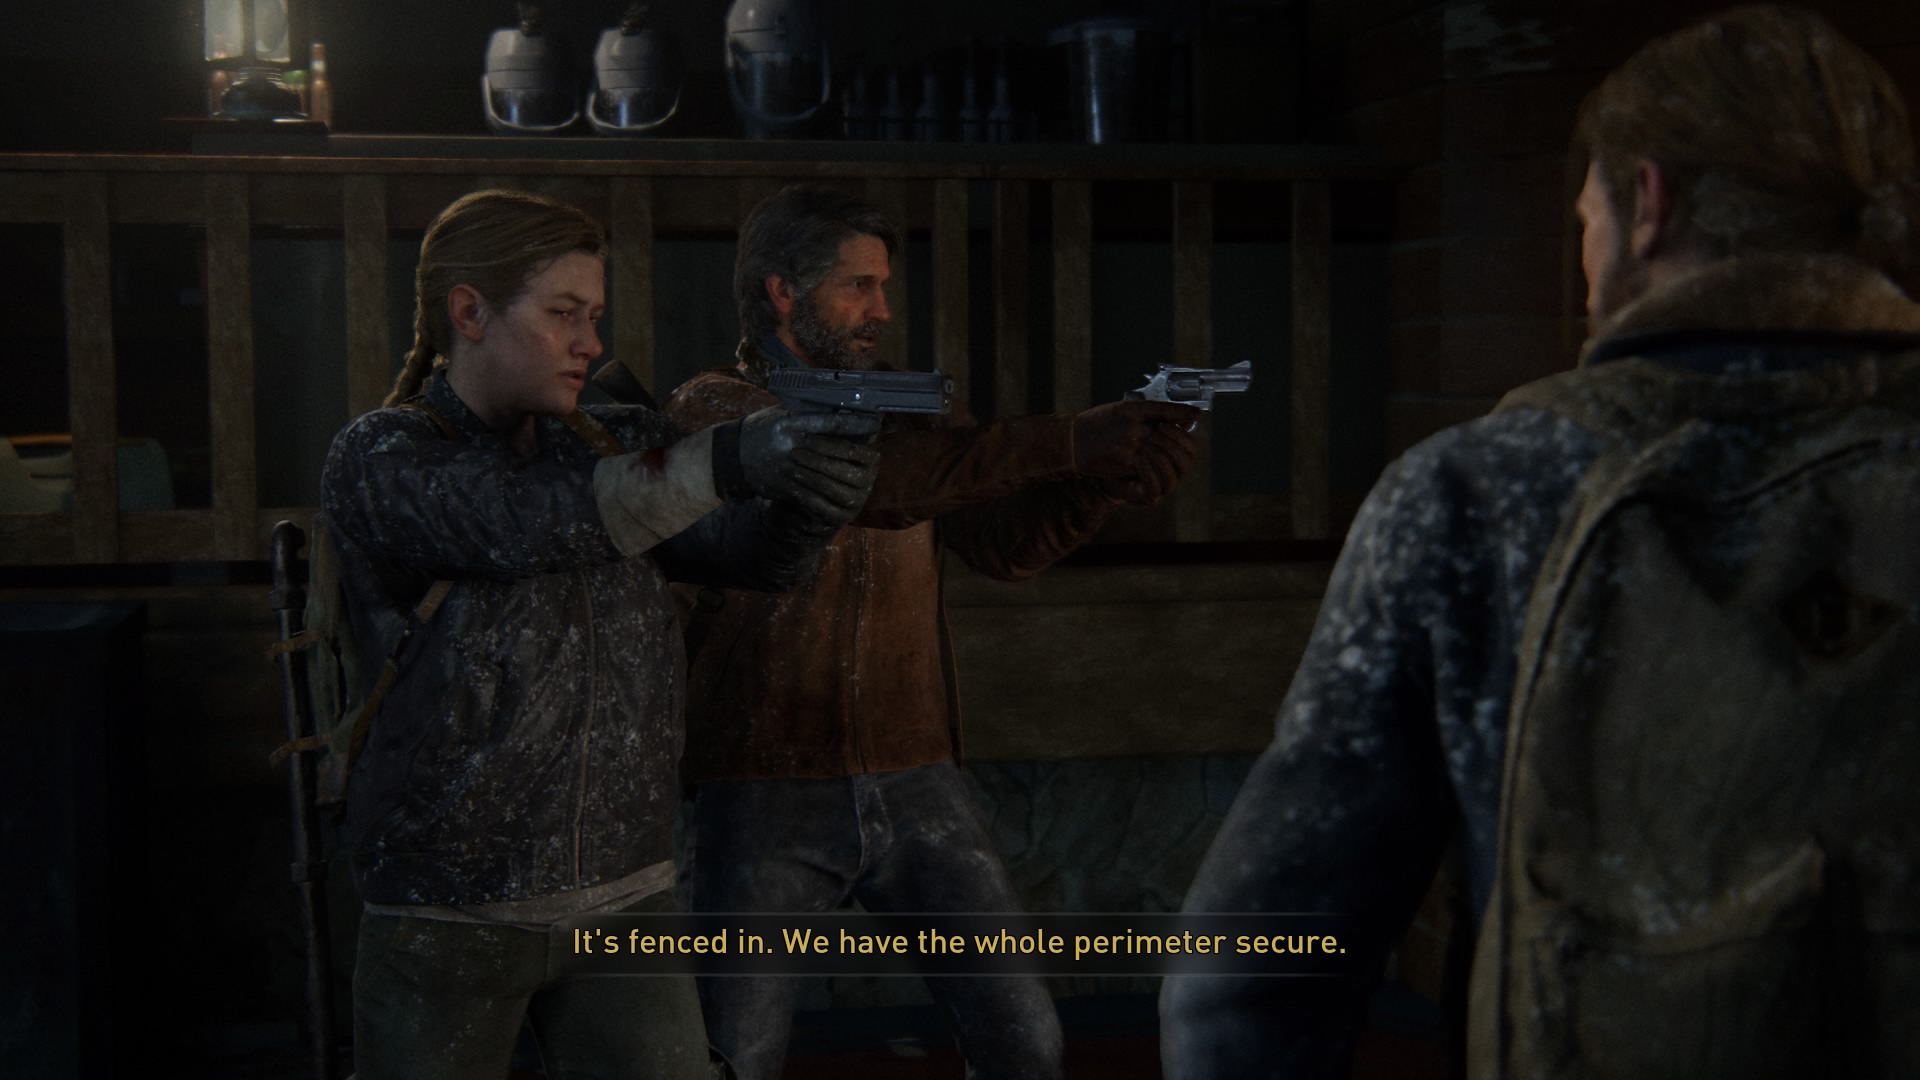 The Last of Us Part 2: fã encontra detalhe sobre Abby em Jackson